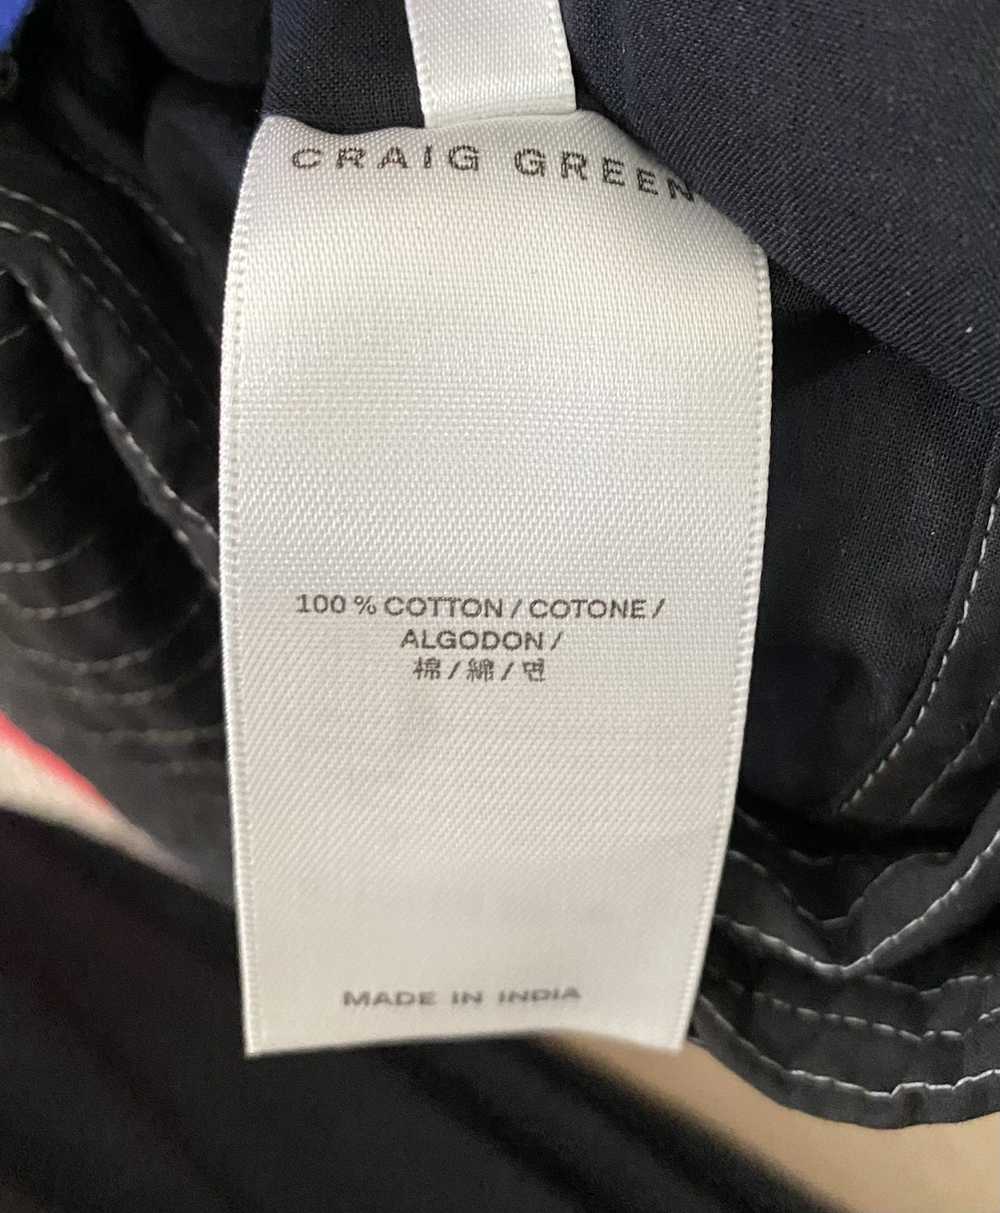 Craig Green Paradise Jacket size small - image 5